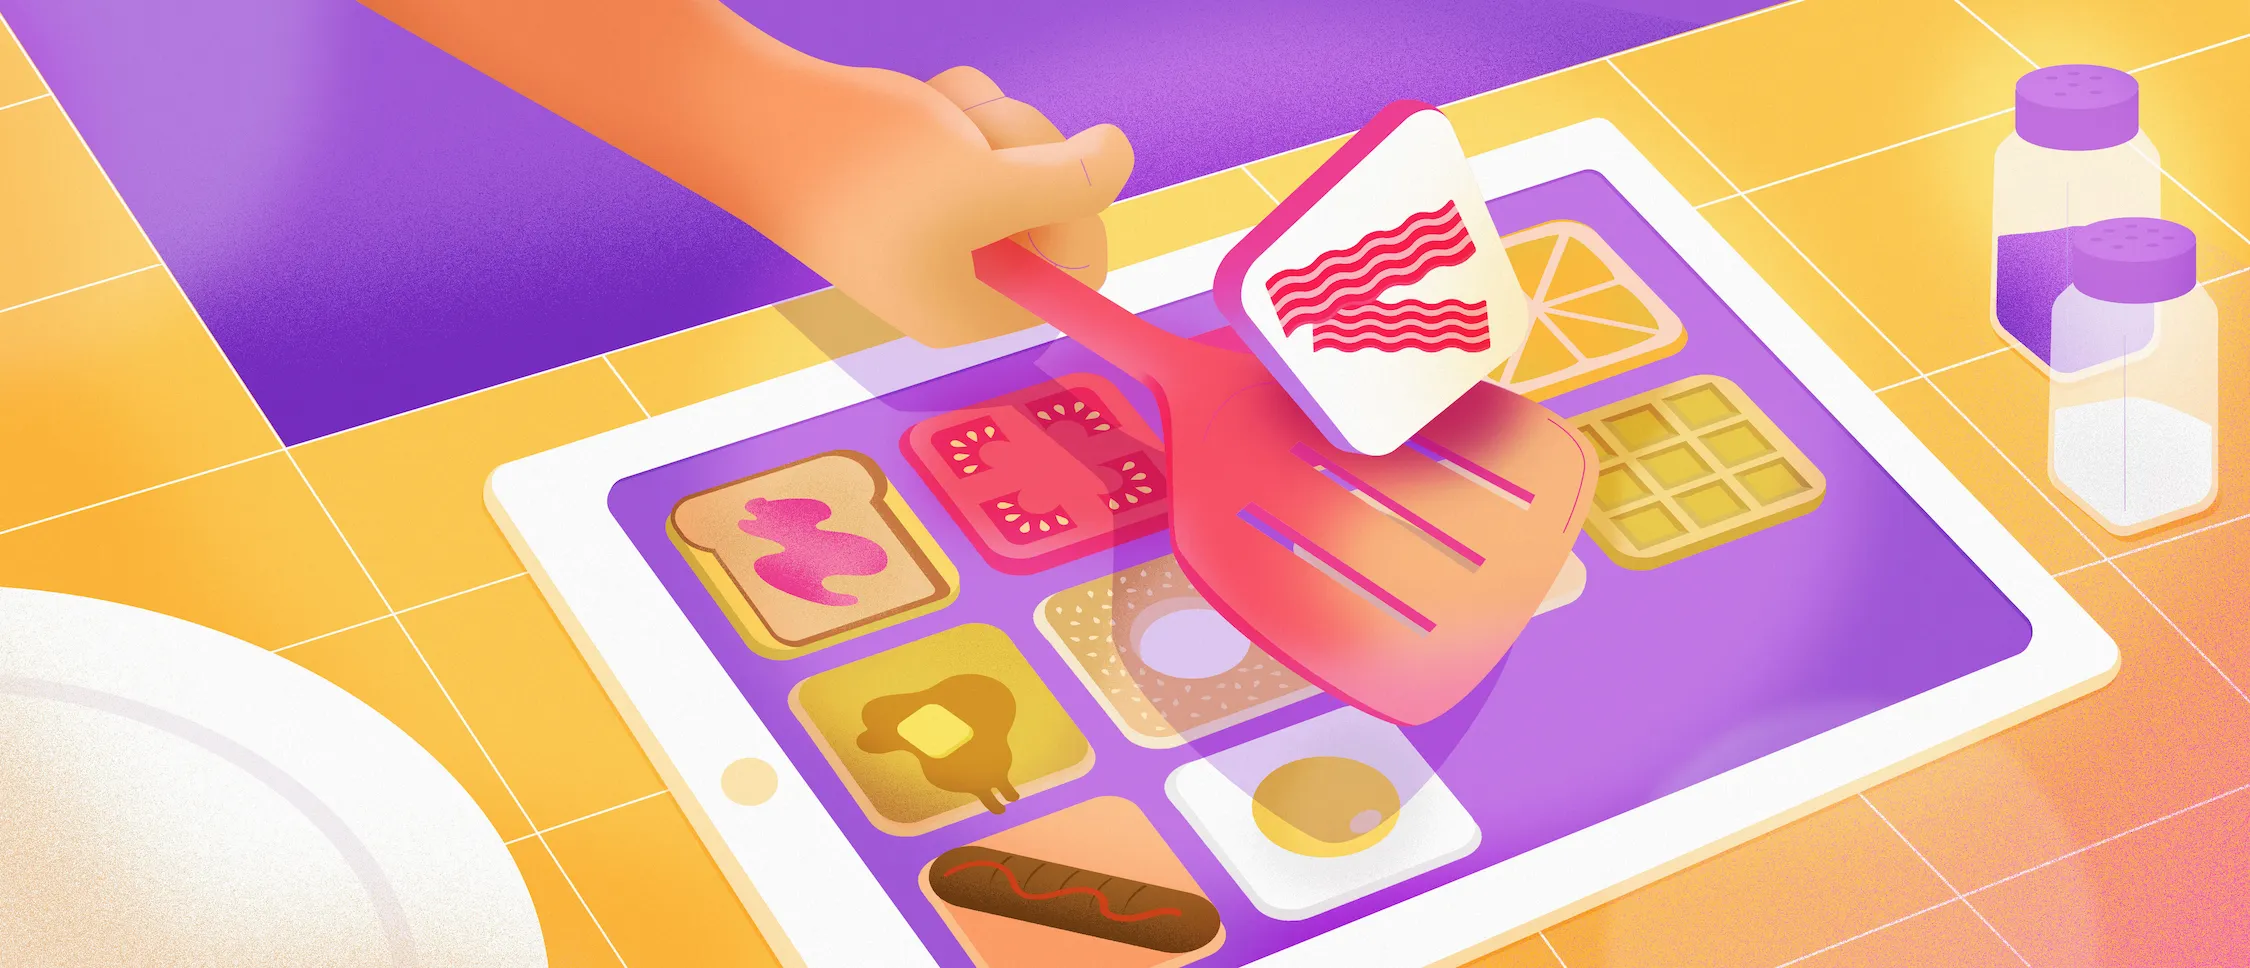 Main qui tient une spatule et qui fait tourner un icône de bacon au-dessus d'une tablette qui représente une plaque de cuisson avec plusieurs aliments de déjeuner en icônes d'apps.